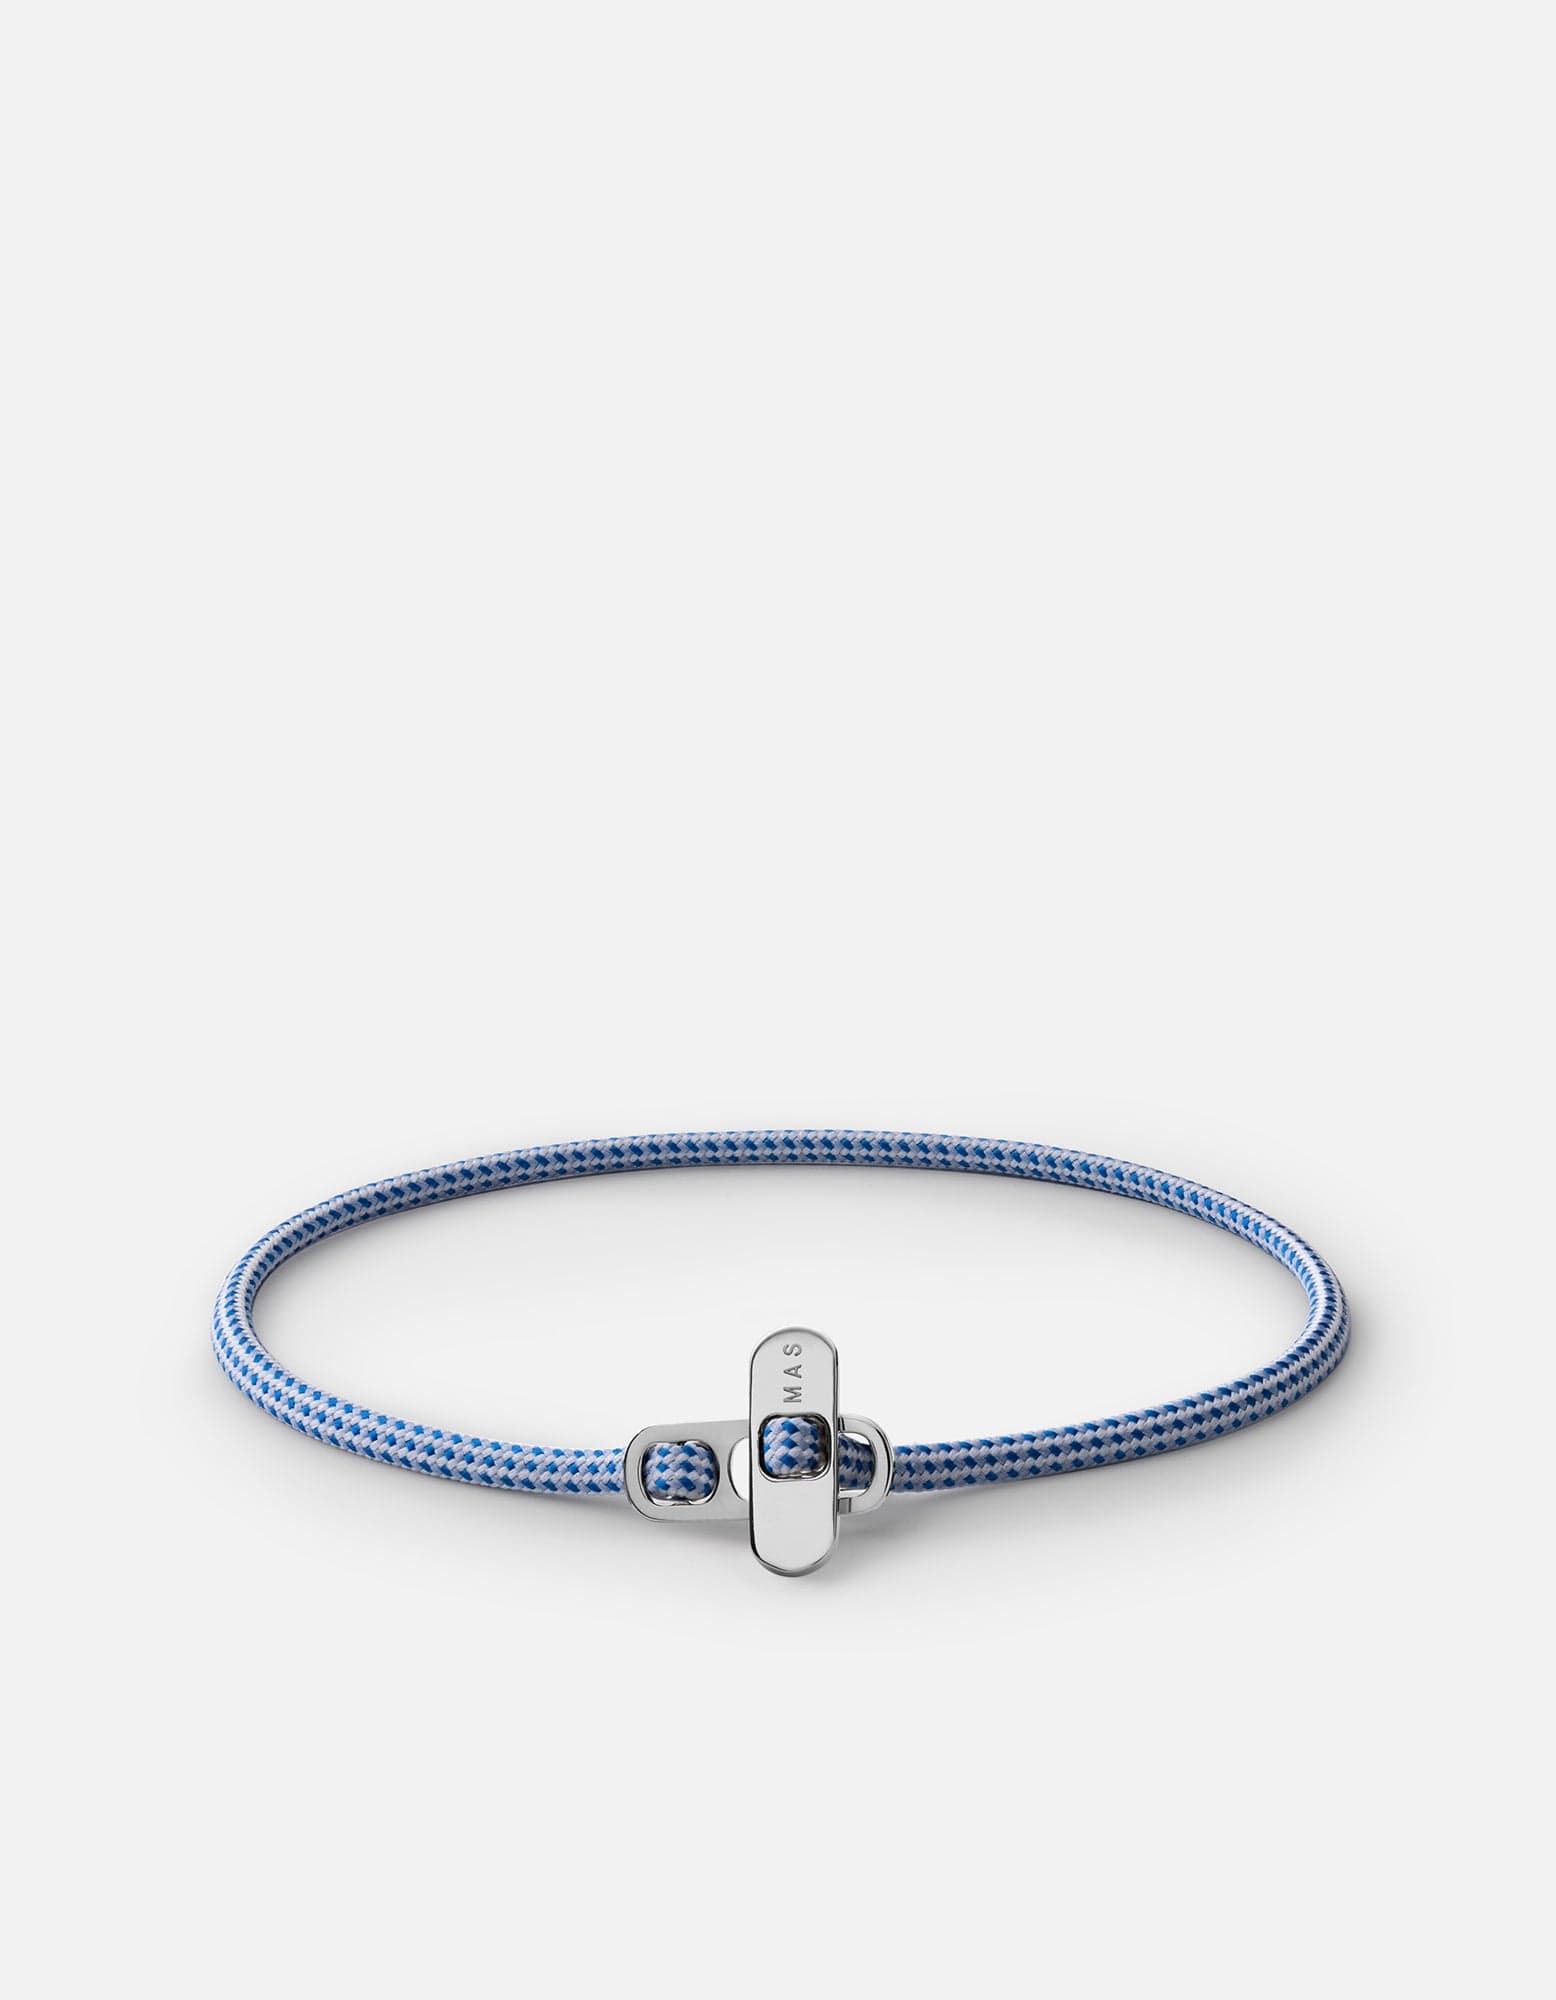 Miansai Men's Metric Chain Bracelet, Sterling Silver, Size M